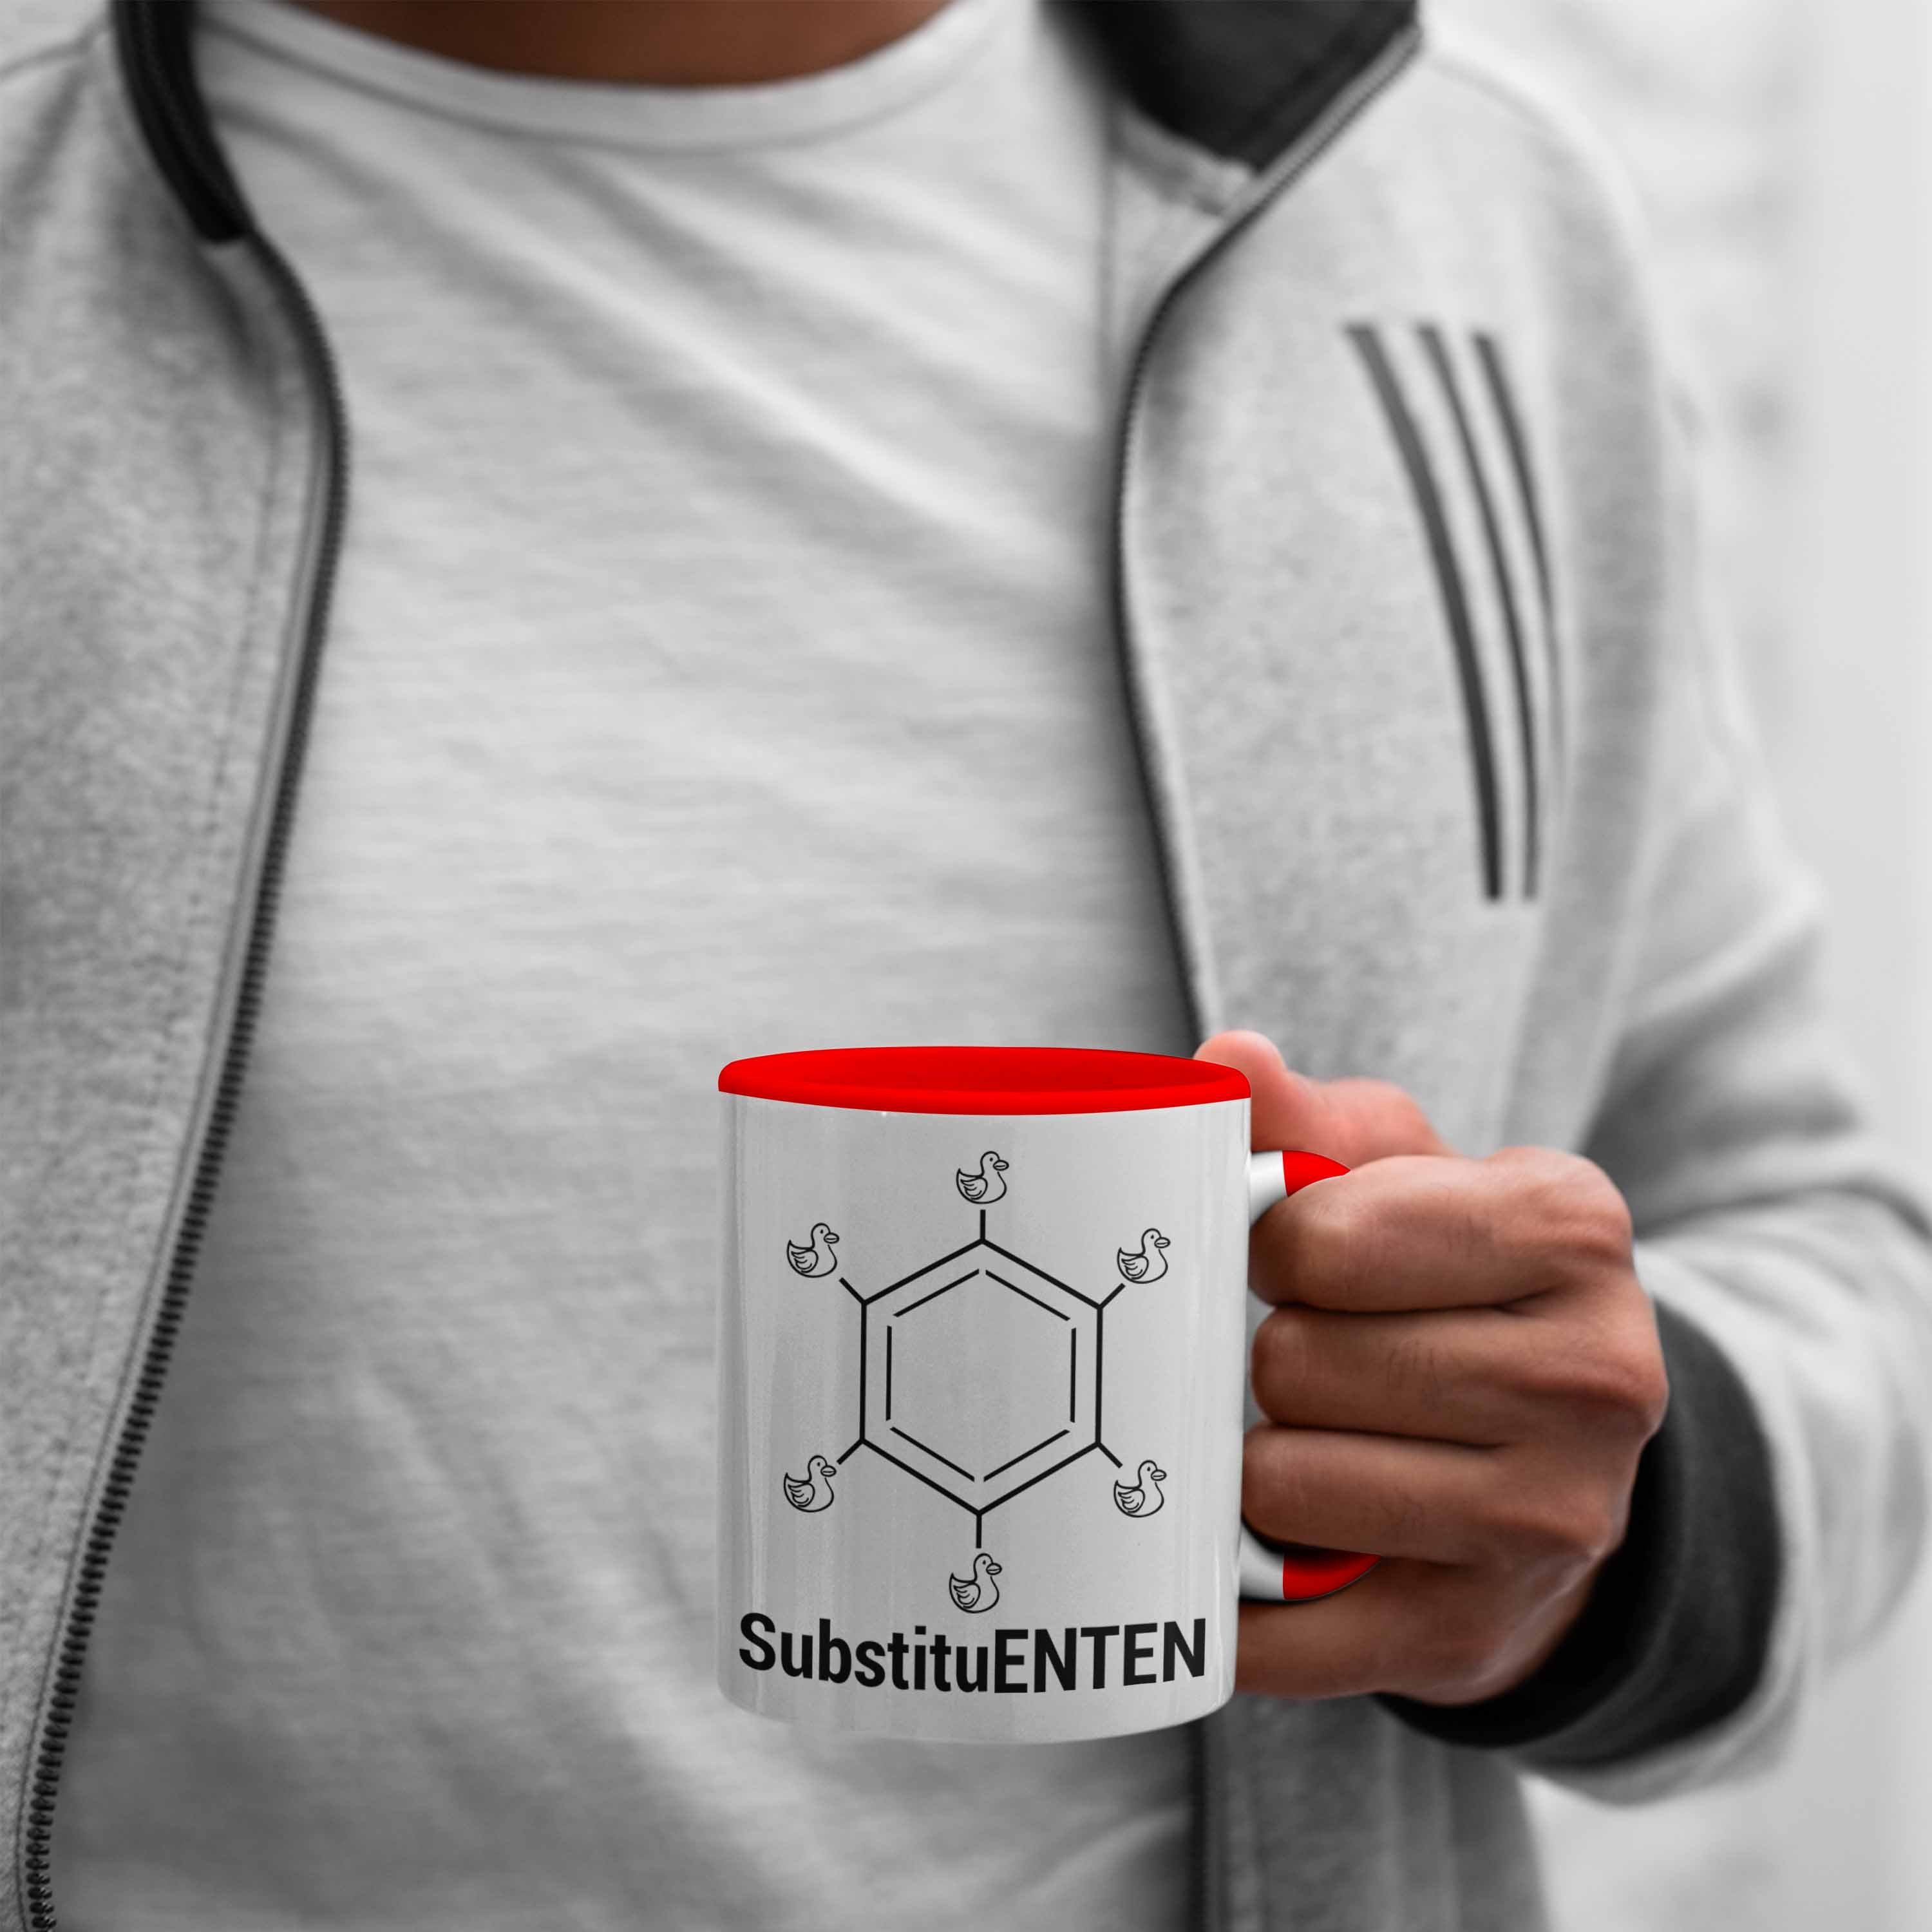 Kaffee Ente Chemie Rot SubstituENTEN Tasse Tasse Chemie Chemiker Trendation Witz Organische